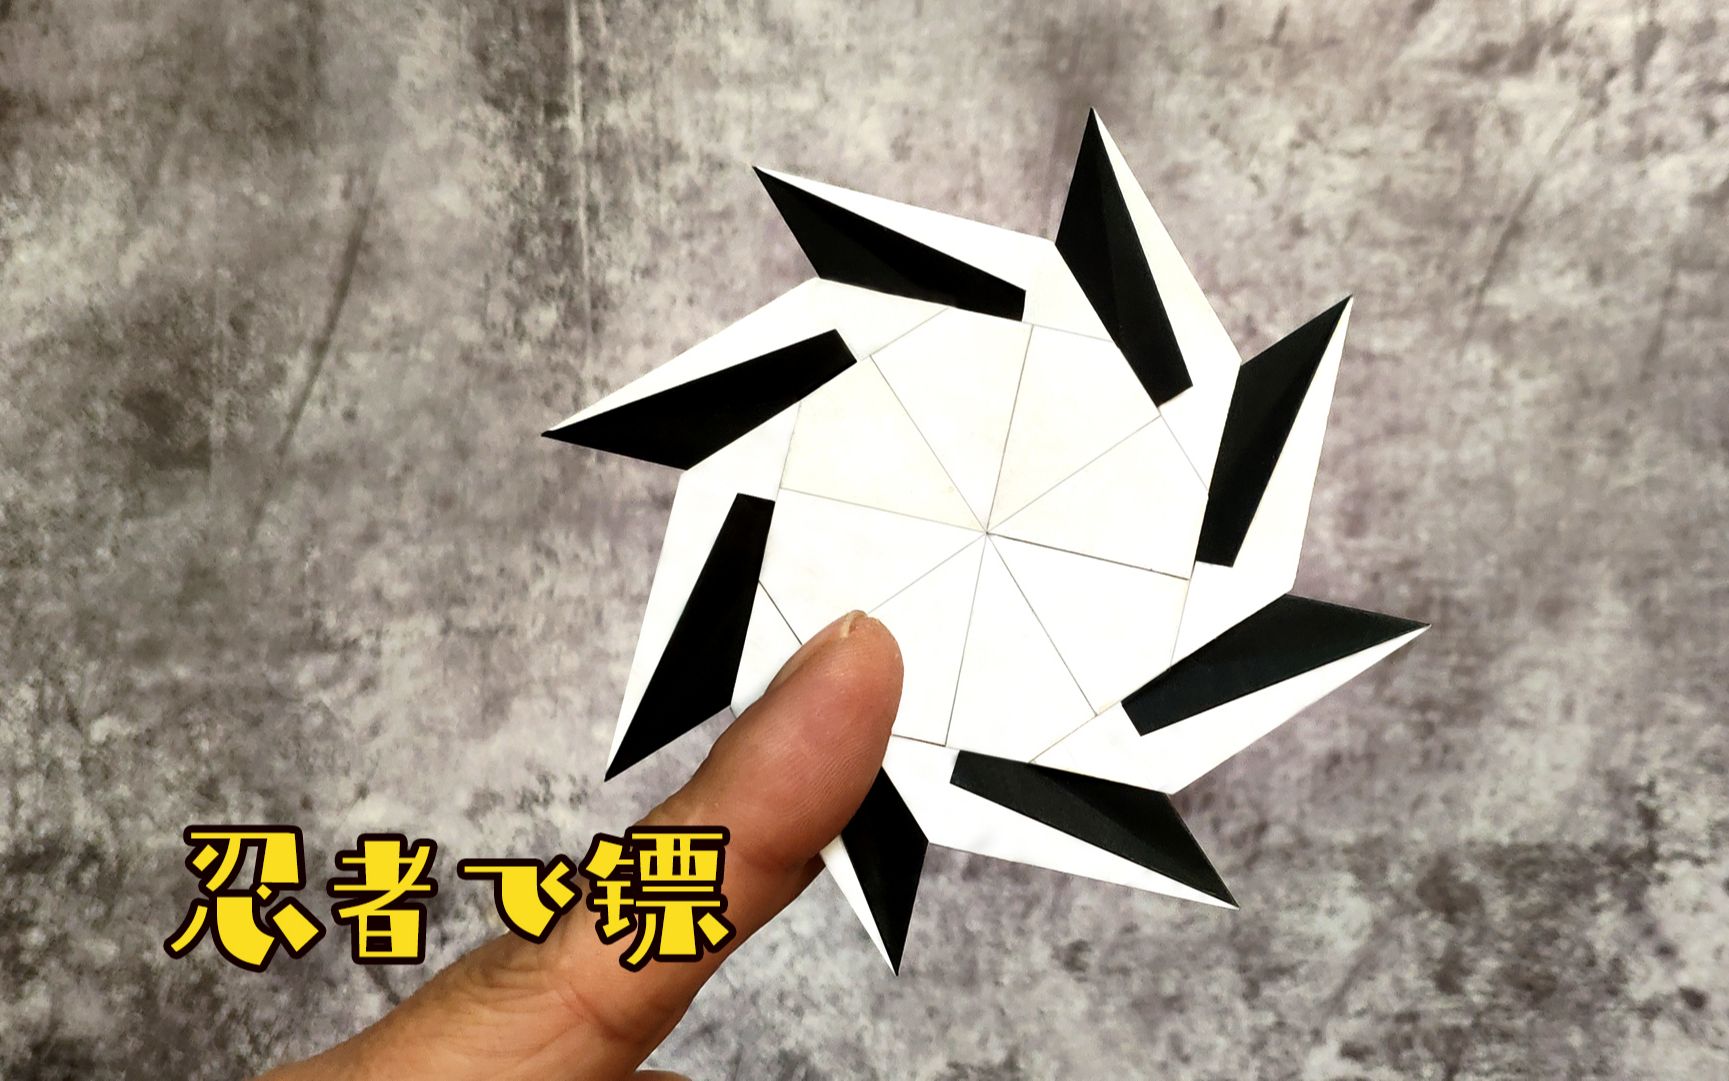 用纸折飞镖暗器可变形图片